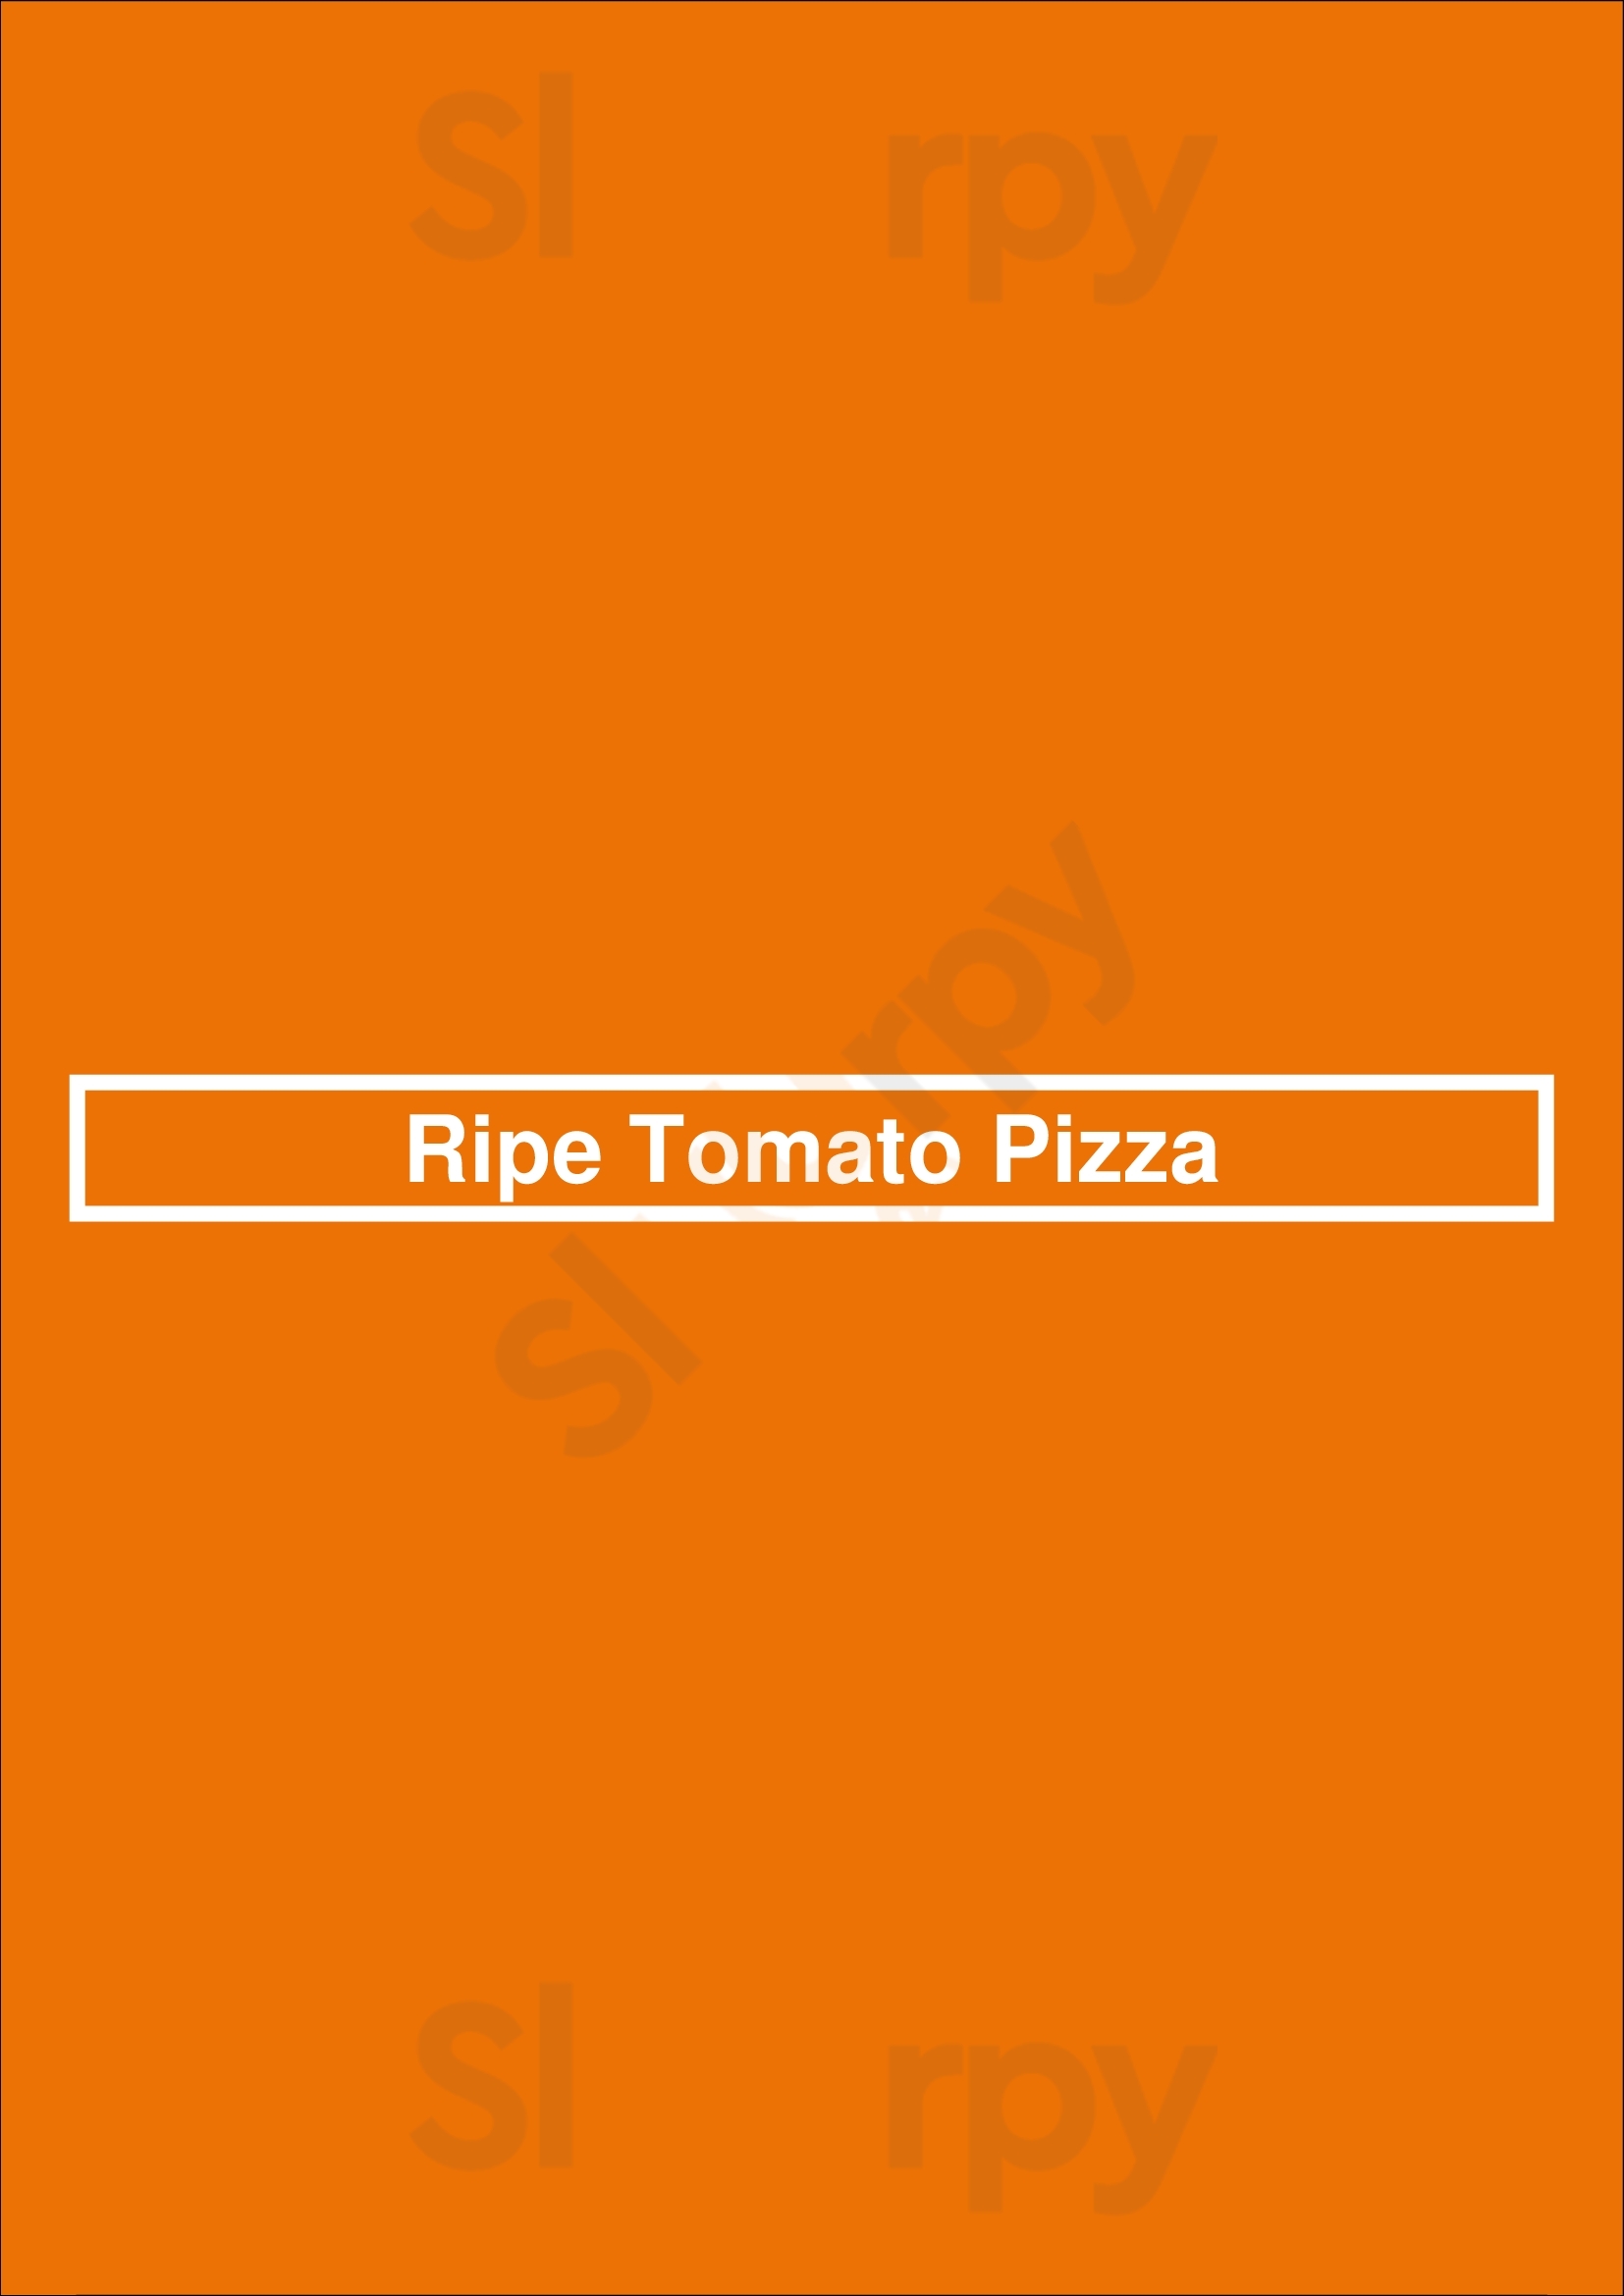 Ripe Tomato Pizza Edmonton Menu - 1